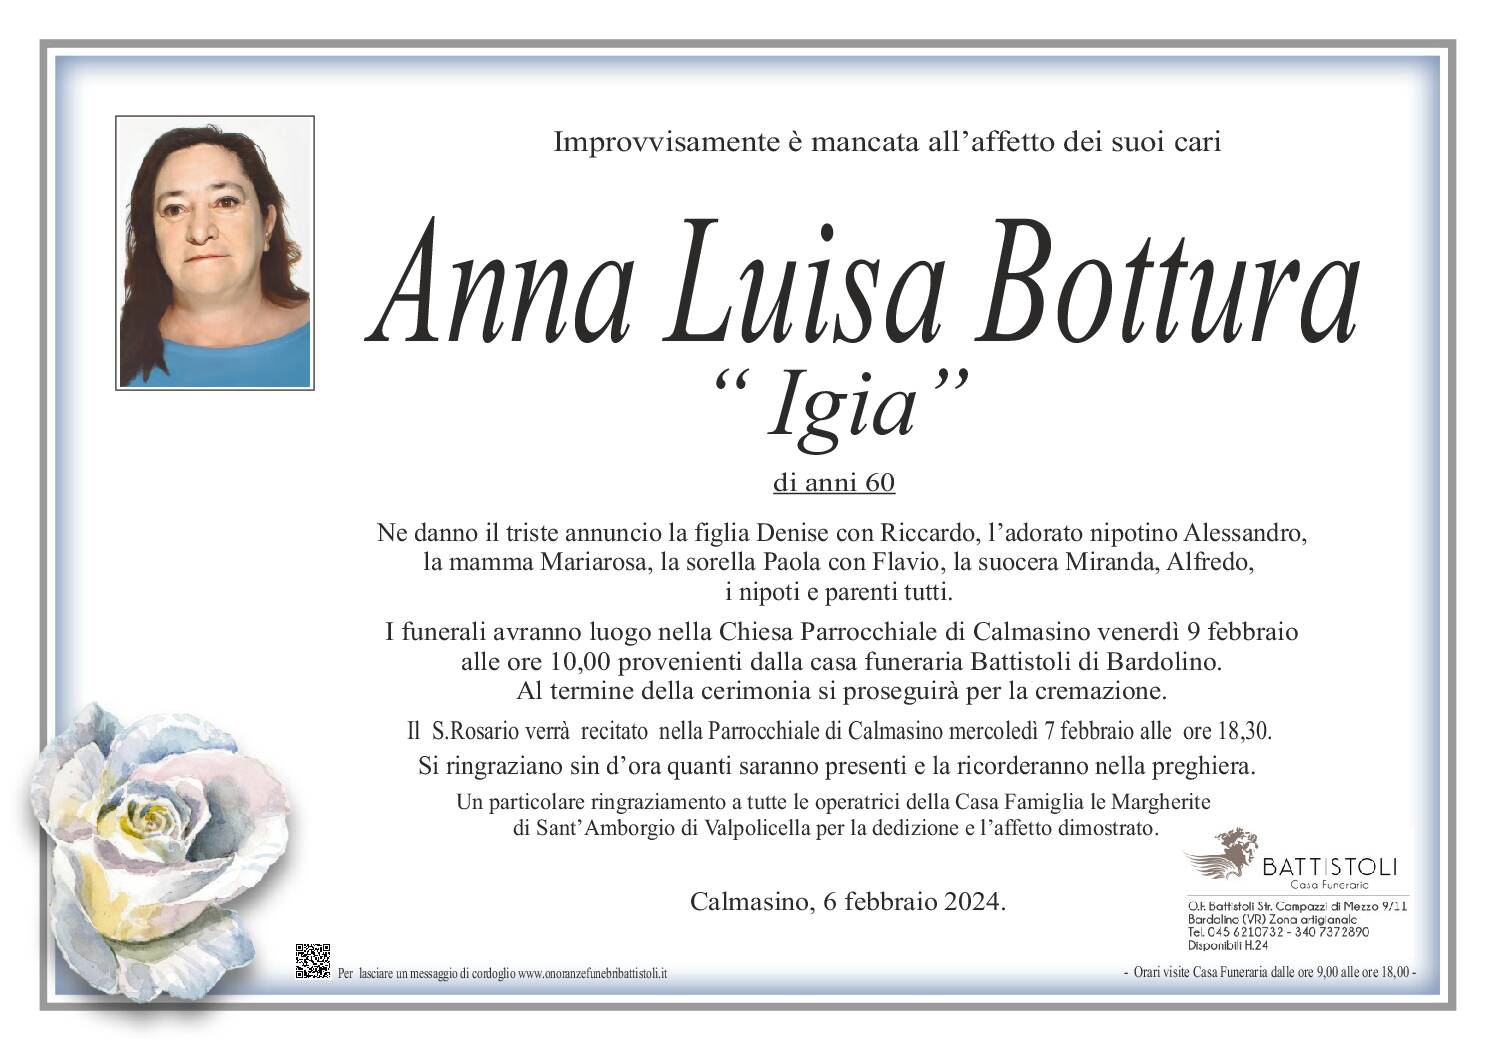 Bottura Anna Luisa